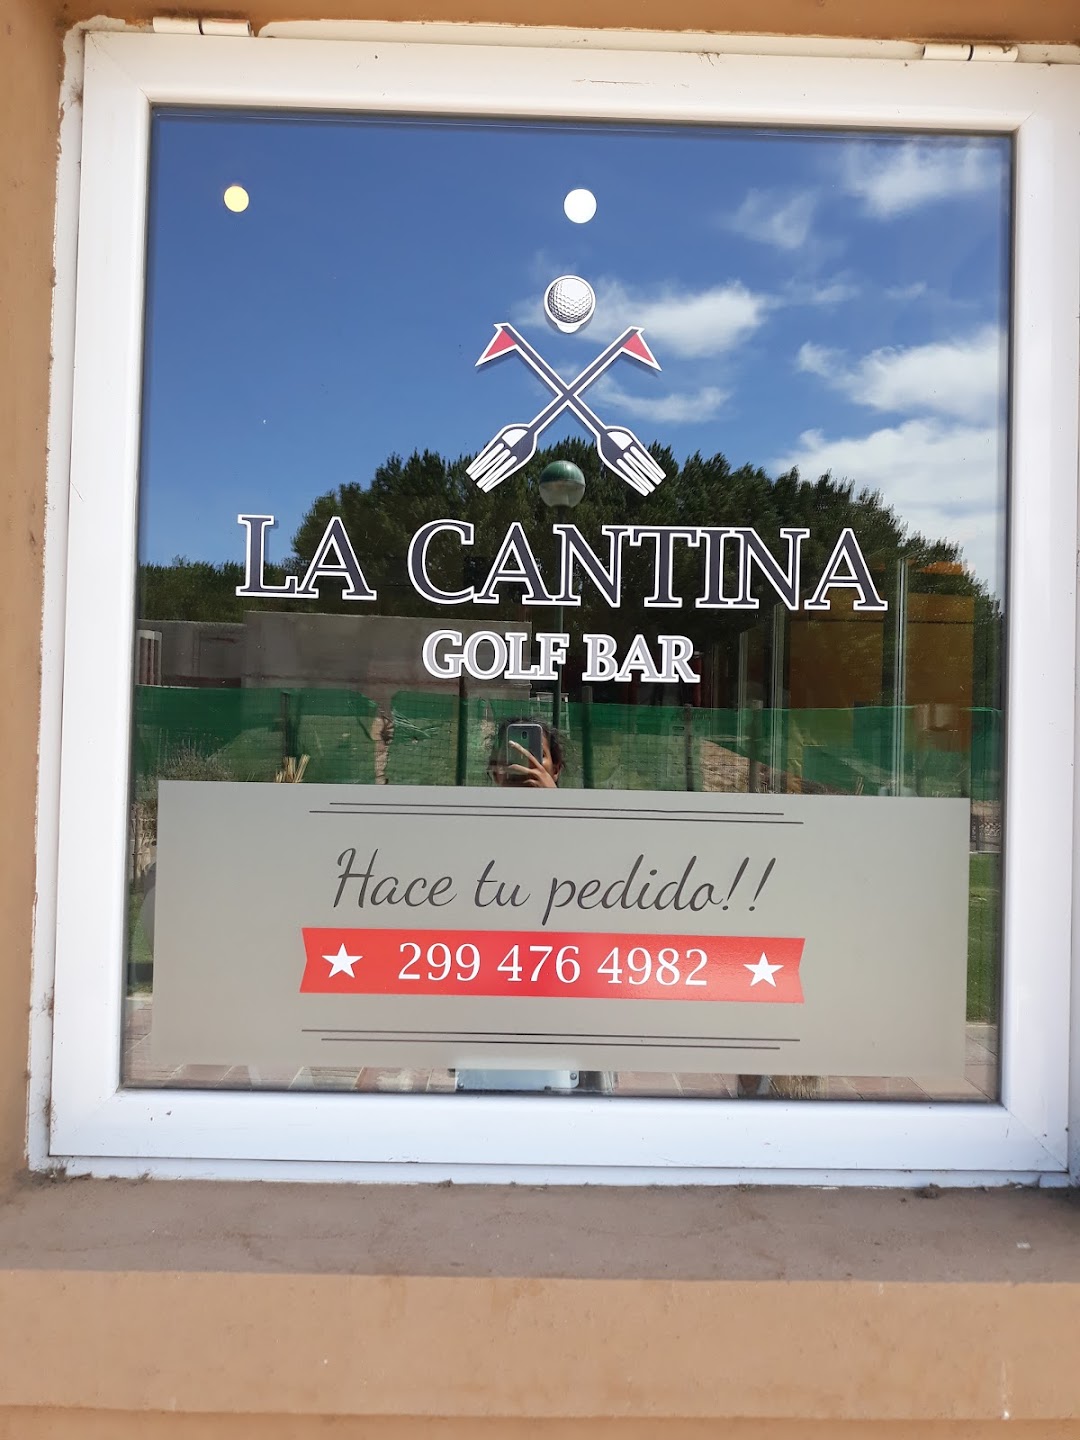 La cantina Golf bar